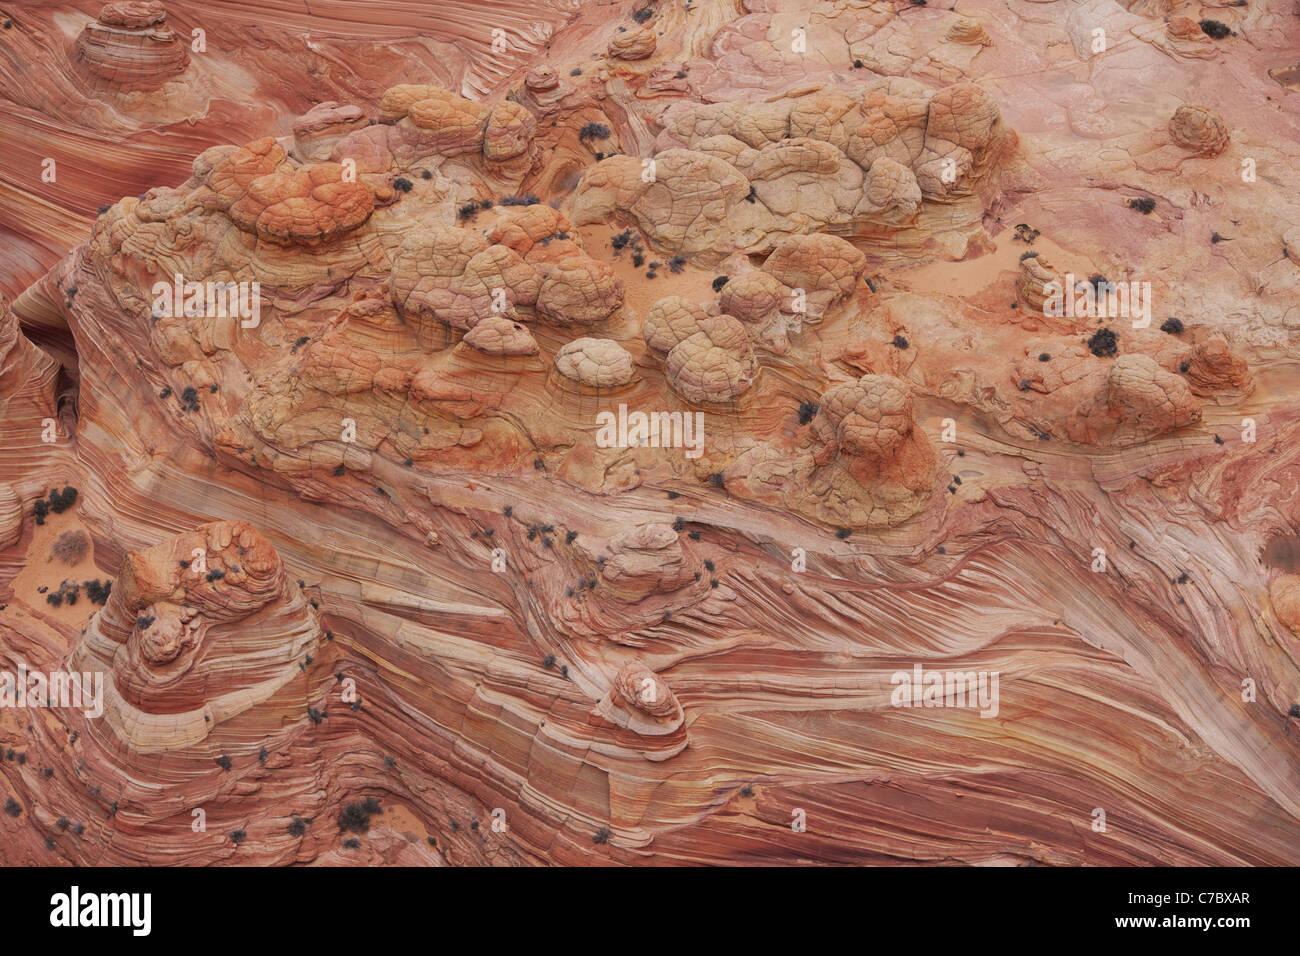 LUFTAUFNAHME. Malerische, rötliche Sandsteinbildung aus Schichten und Hügeln. Vermilion Cliffs National Monument, Coconino County, Arizona, USA. Stockfoto